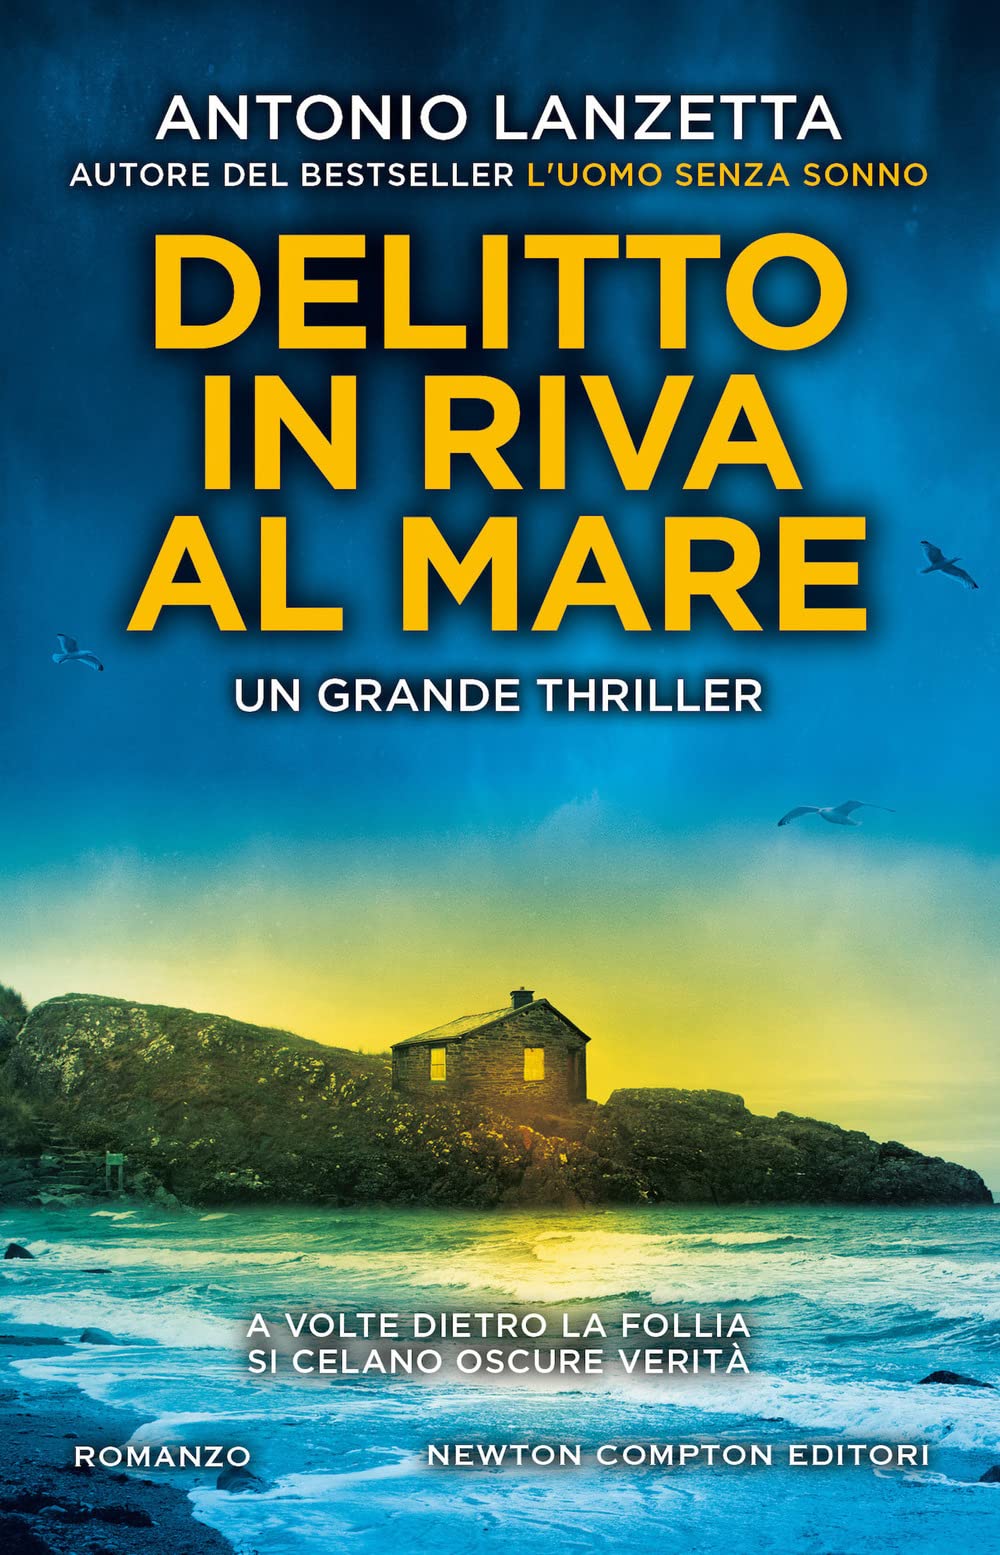 Delitto in riva al mare di Antonio Lanzetta Recensione Thriller Life